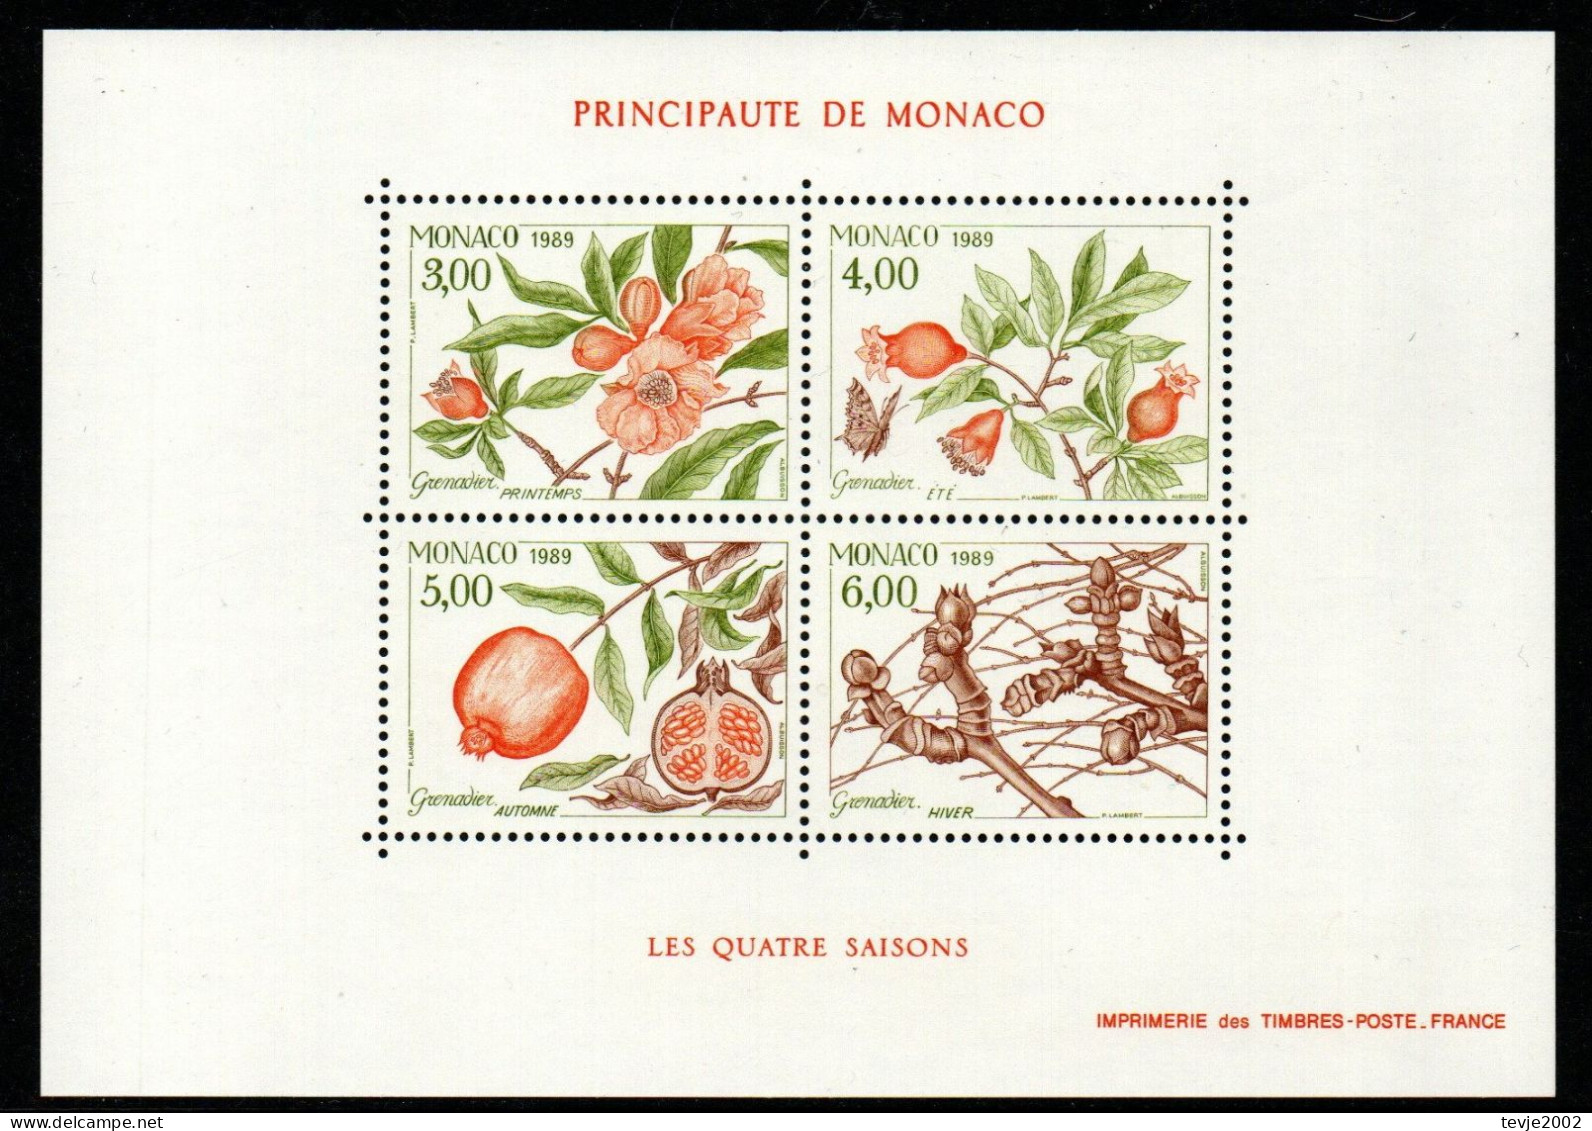 Monaco 1989 - Mi.Nr. Block 42 - Postfrisch MNH - Bäume Trees Granatapfel Früchte Obst Fruits - Arbres